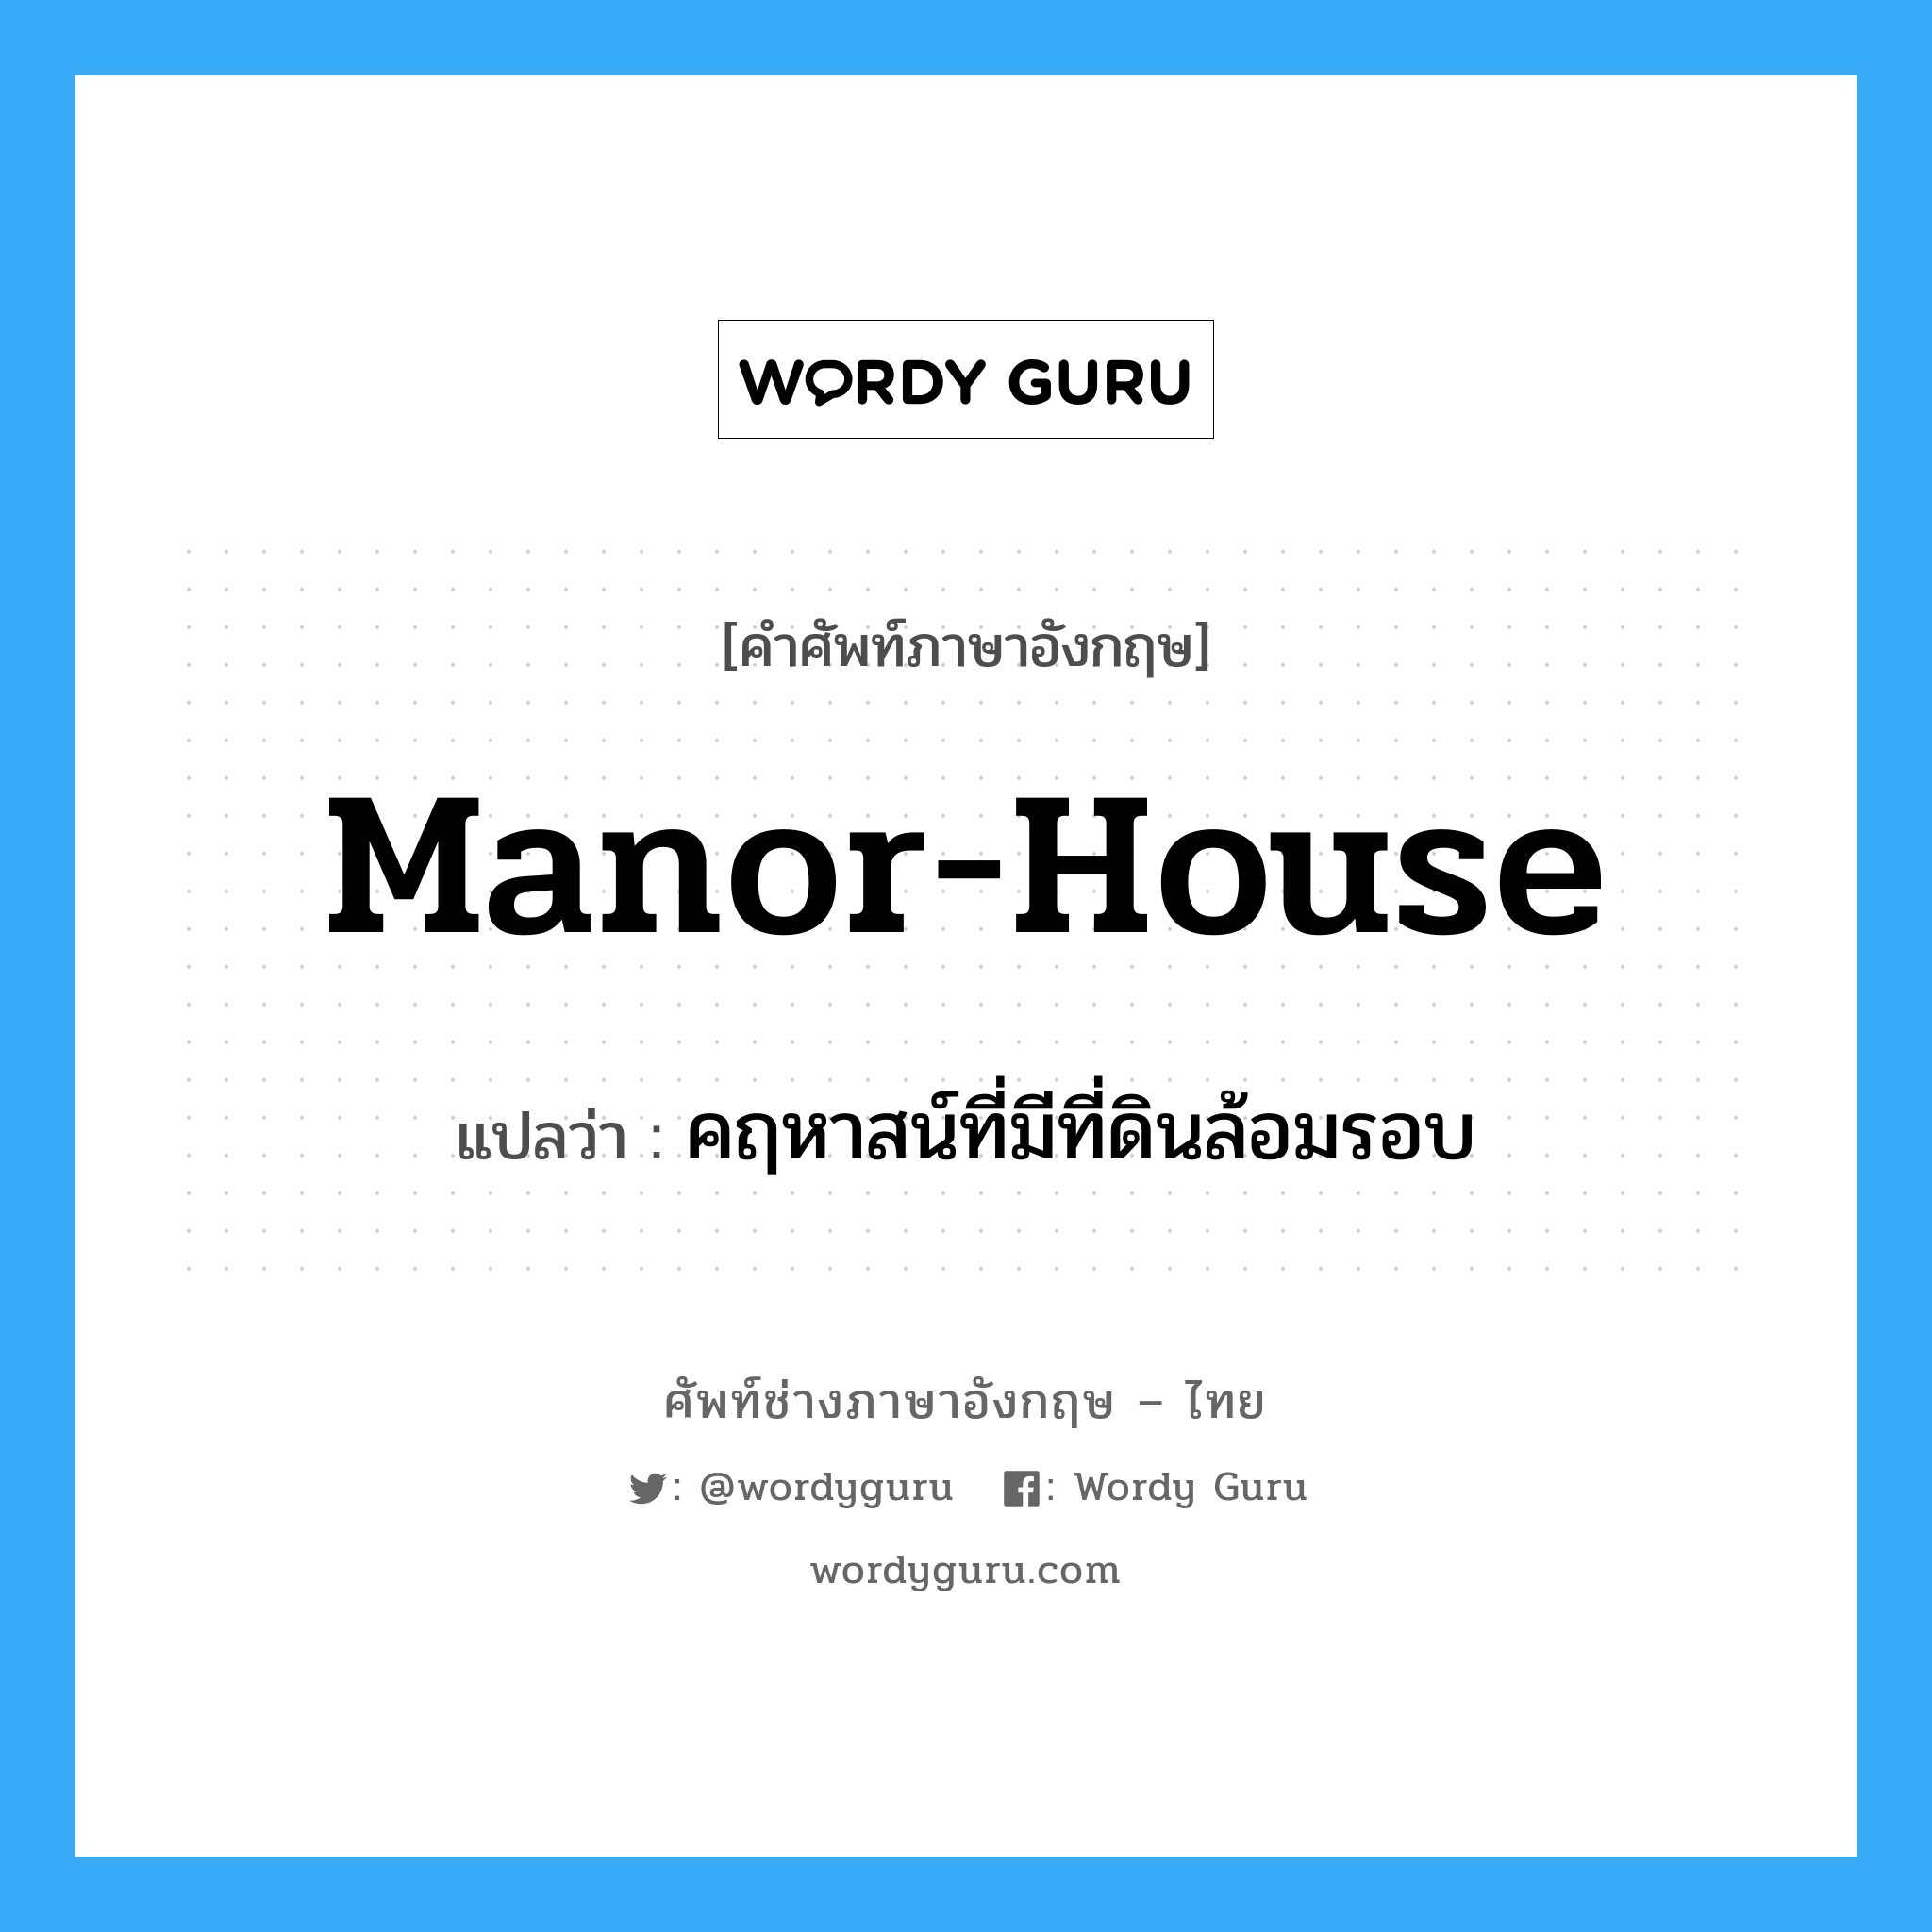 manor-house แปลว่า?, คำศัพท์ช่างภาษาอังกฤษ - ไทย manor-house คำศัพท์ภาษาอังกฤษ manor-house แปลว่า คฤหาสน์ที่มีที่ดินล้อมรอบ